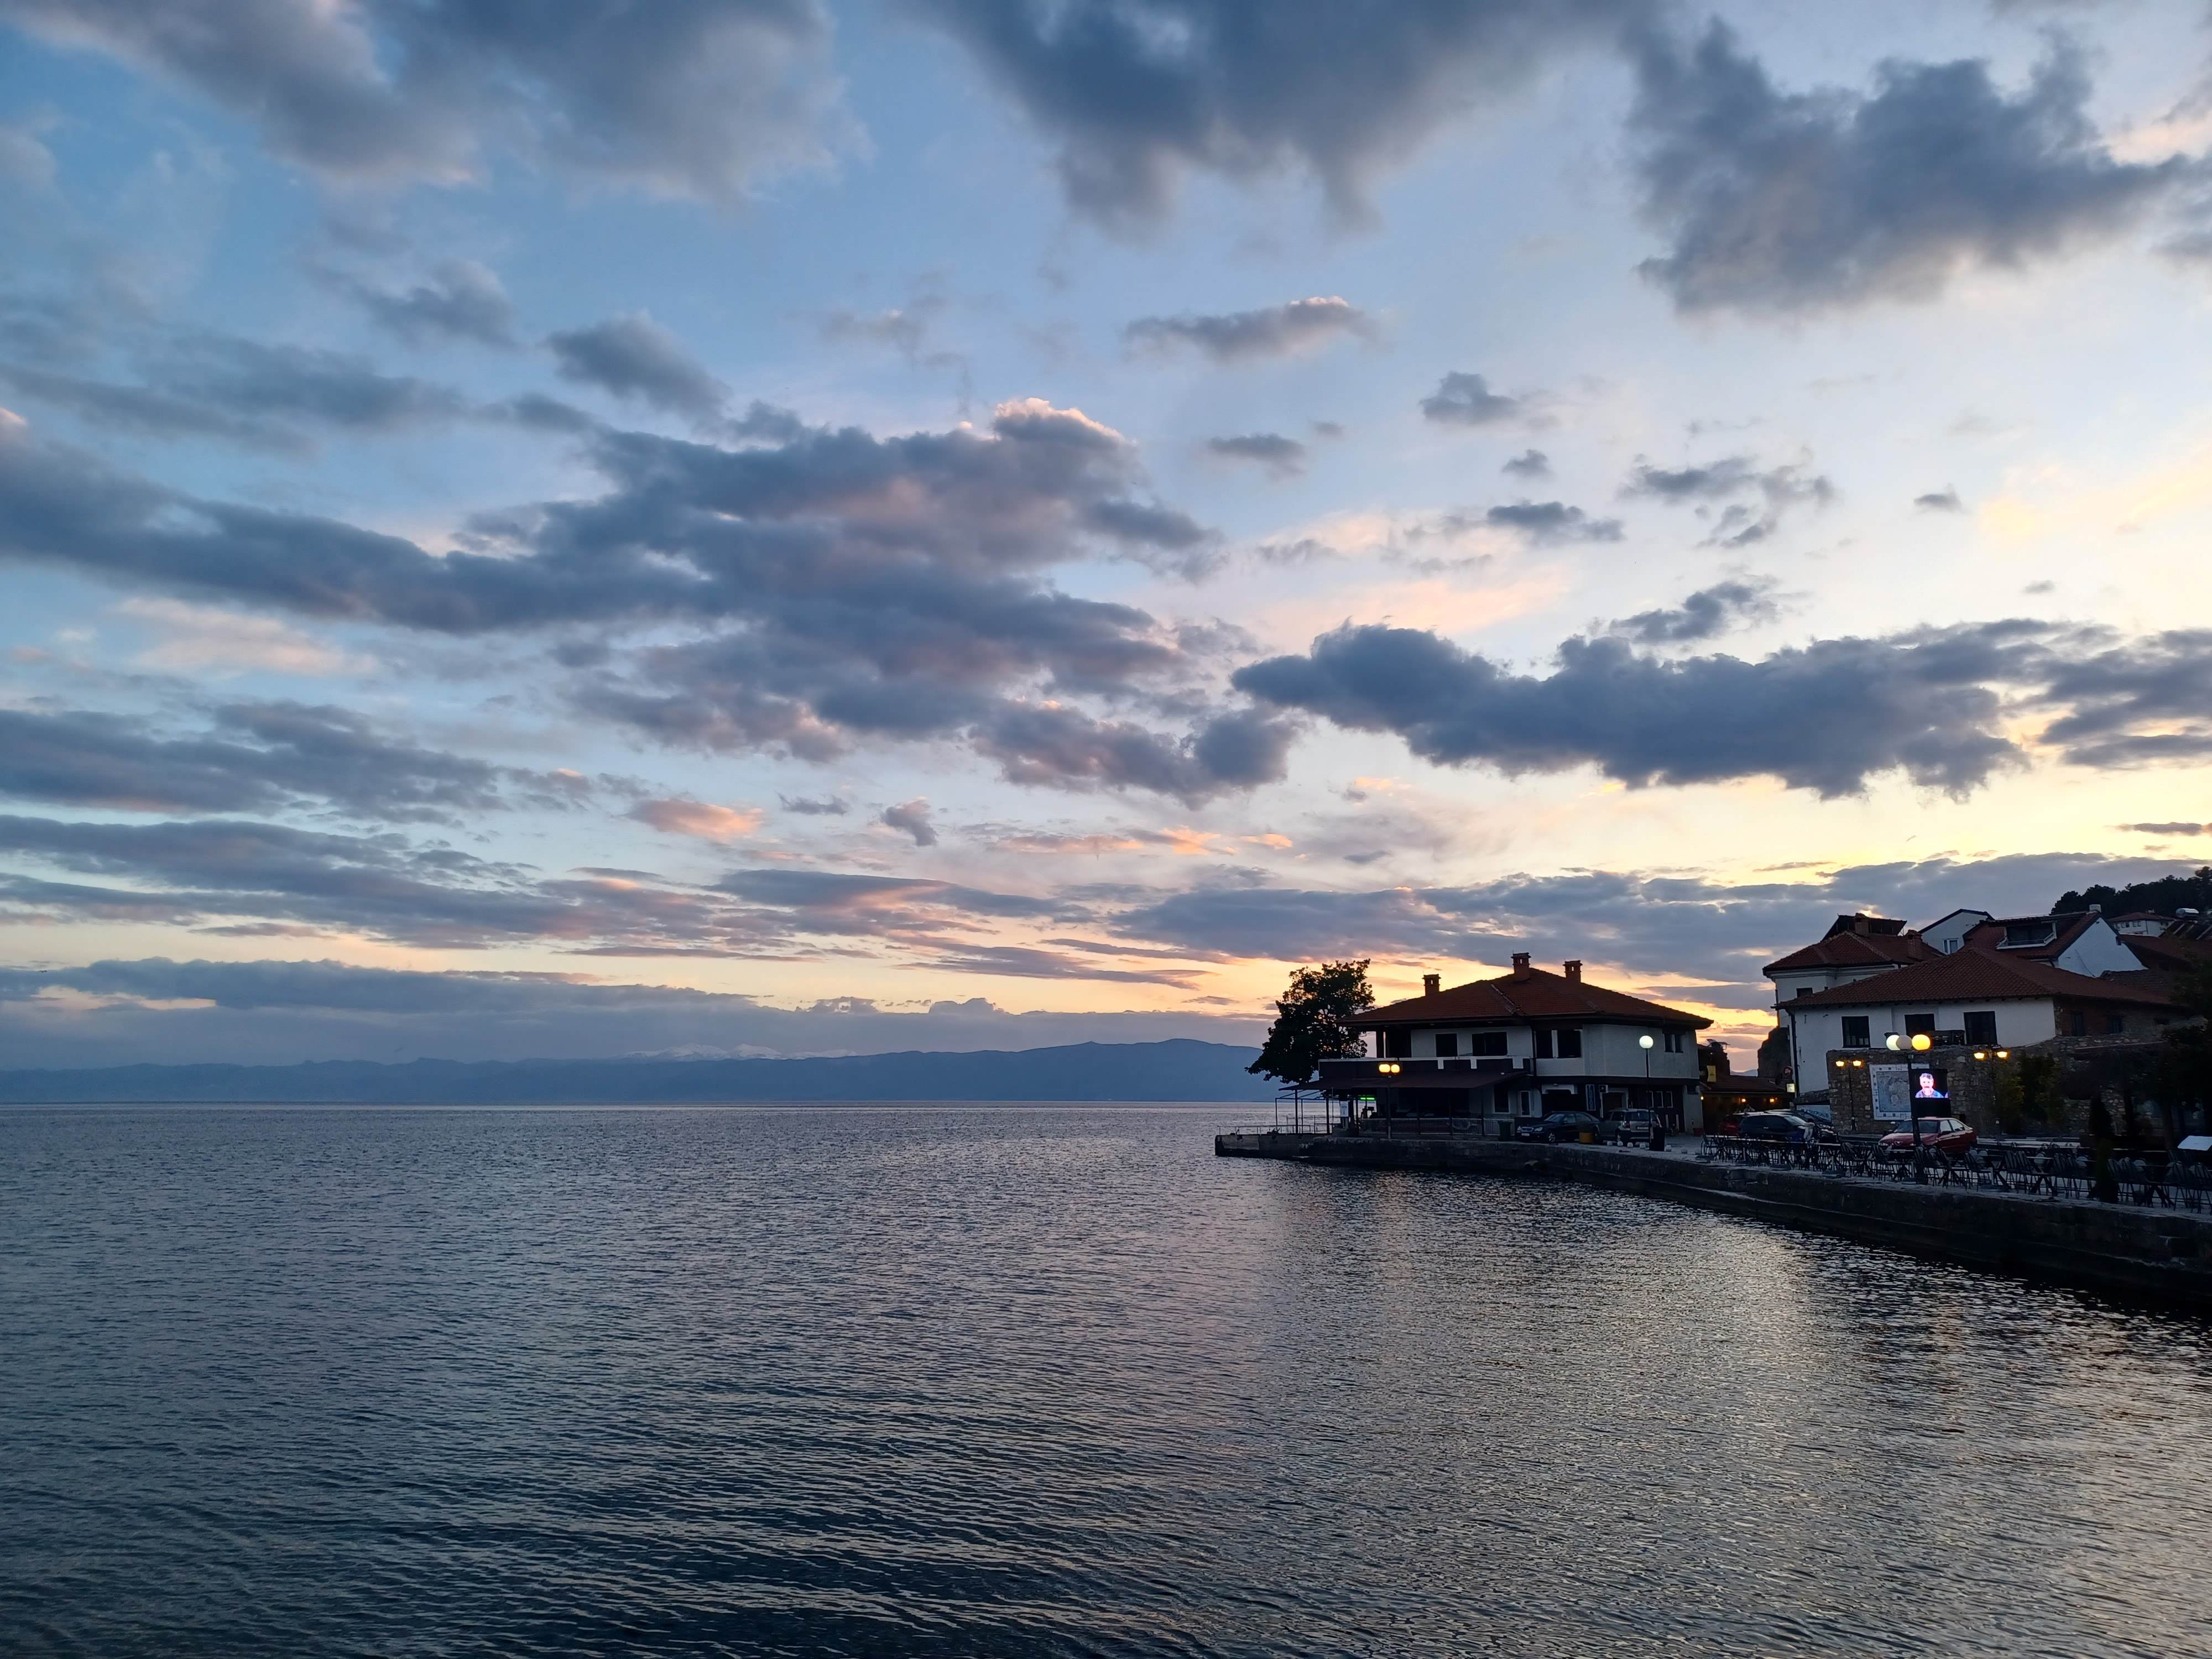 sunset on Lake Ohrid